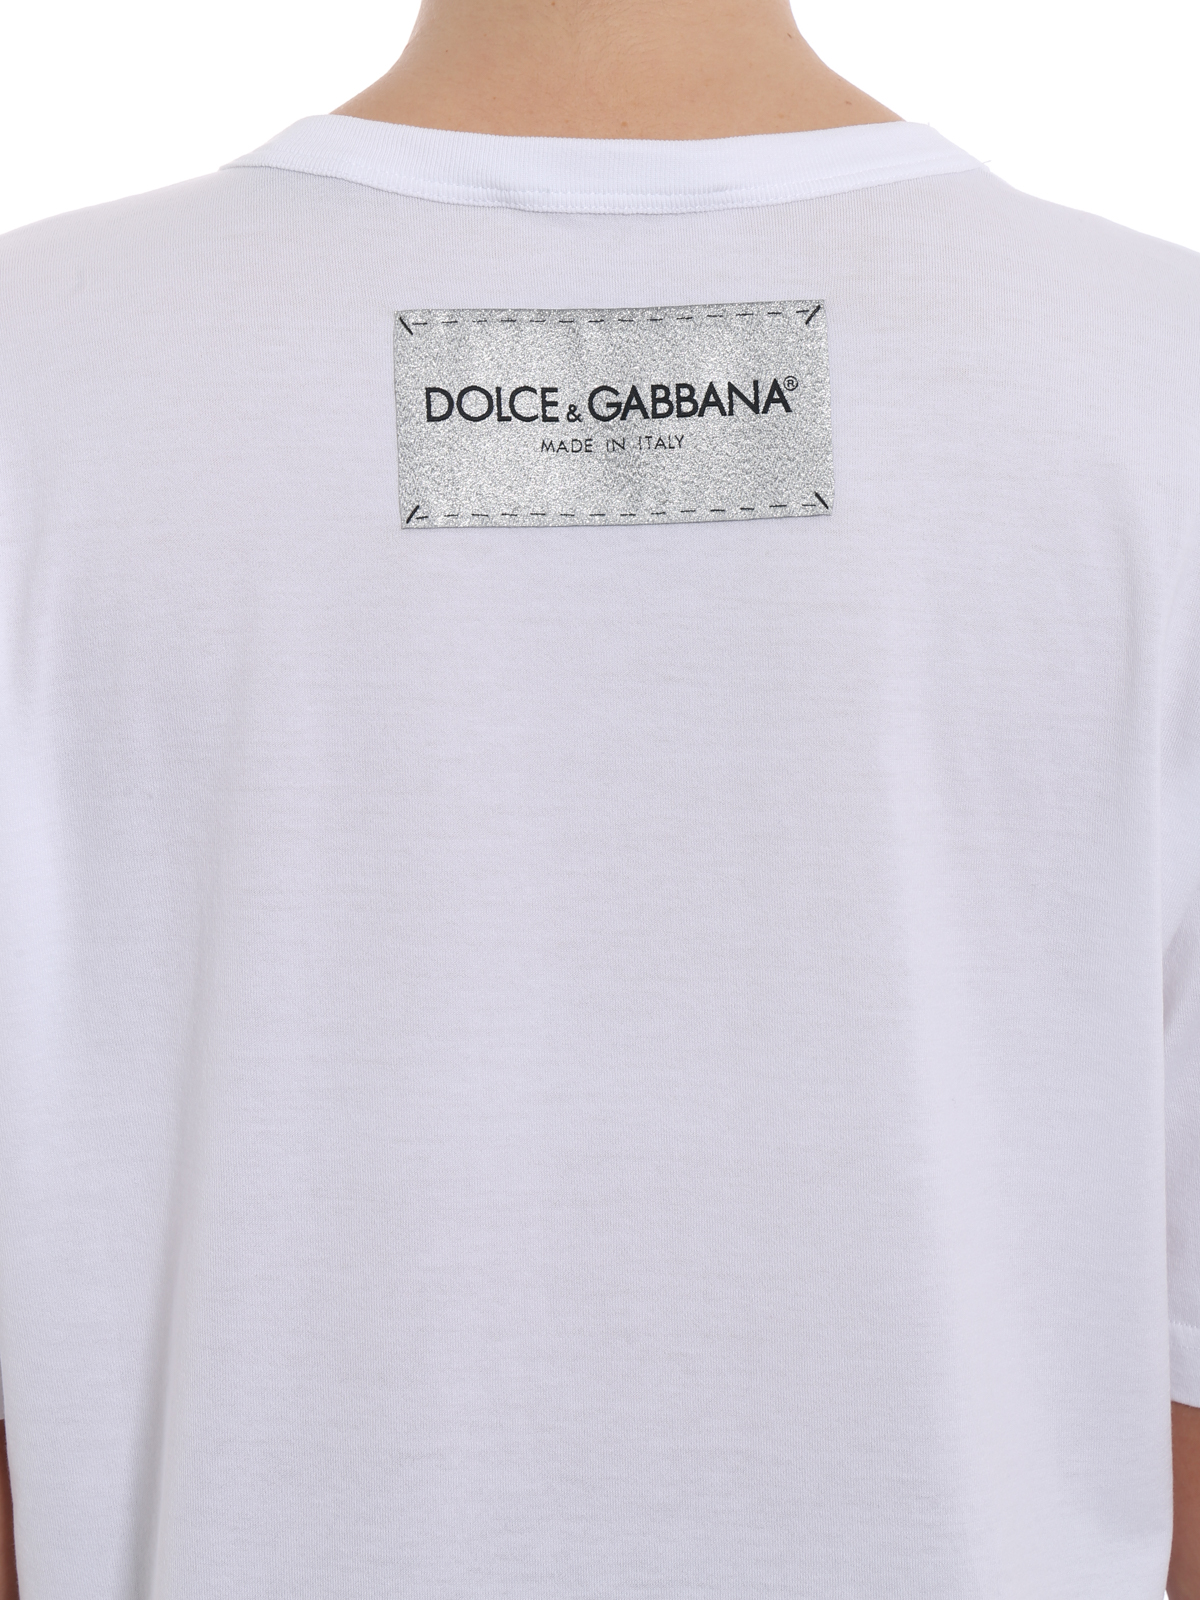 dolce gabbana oversized t shirt